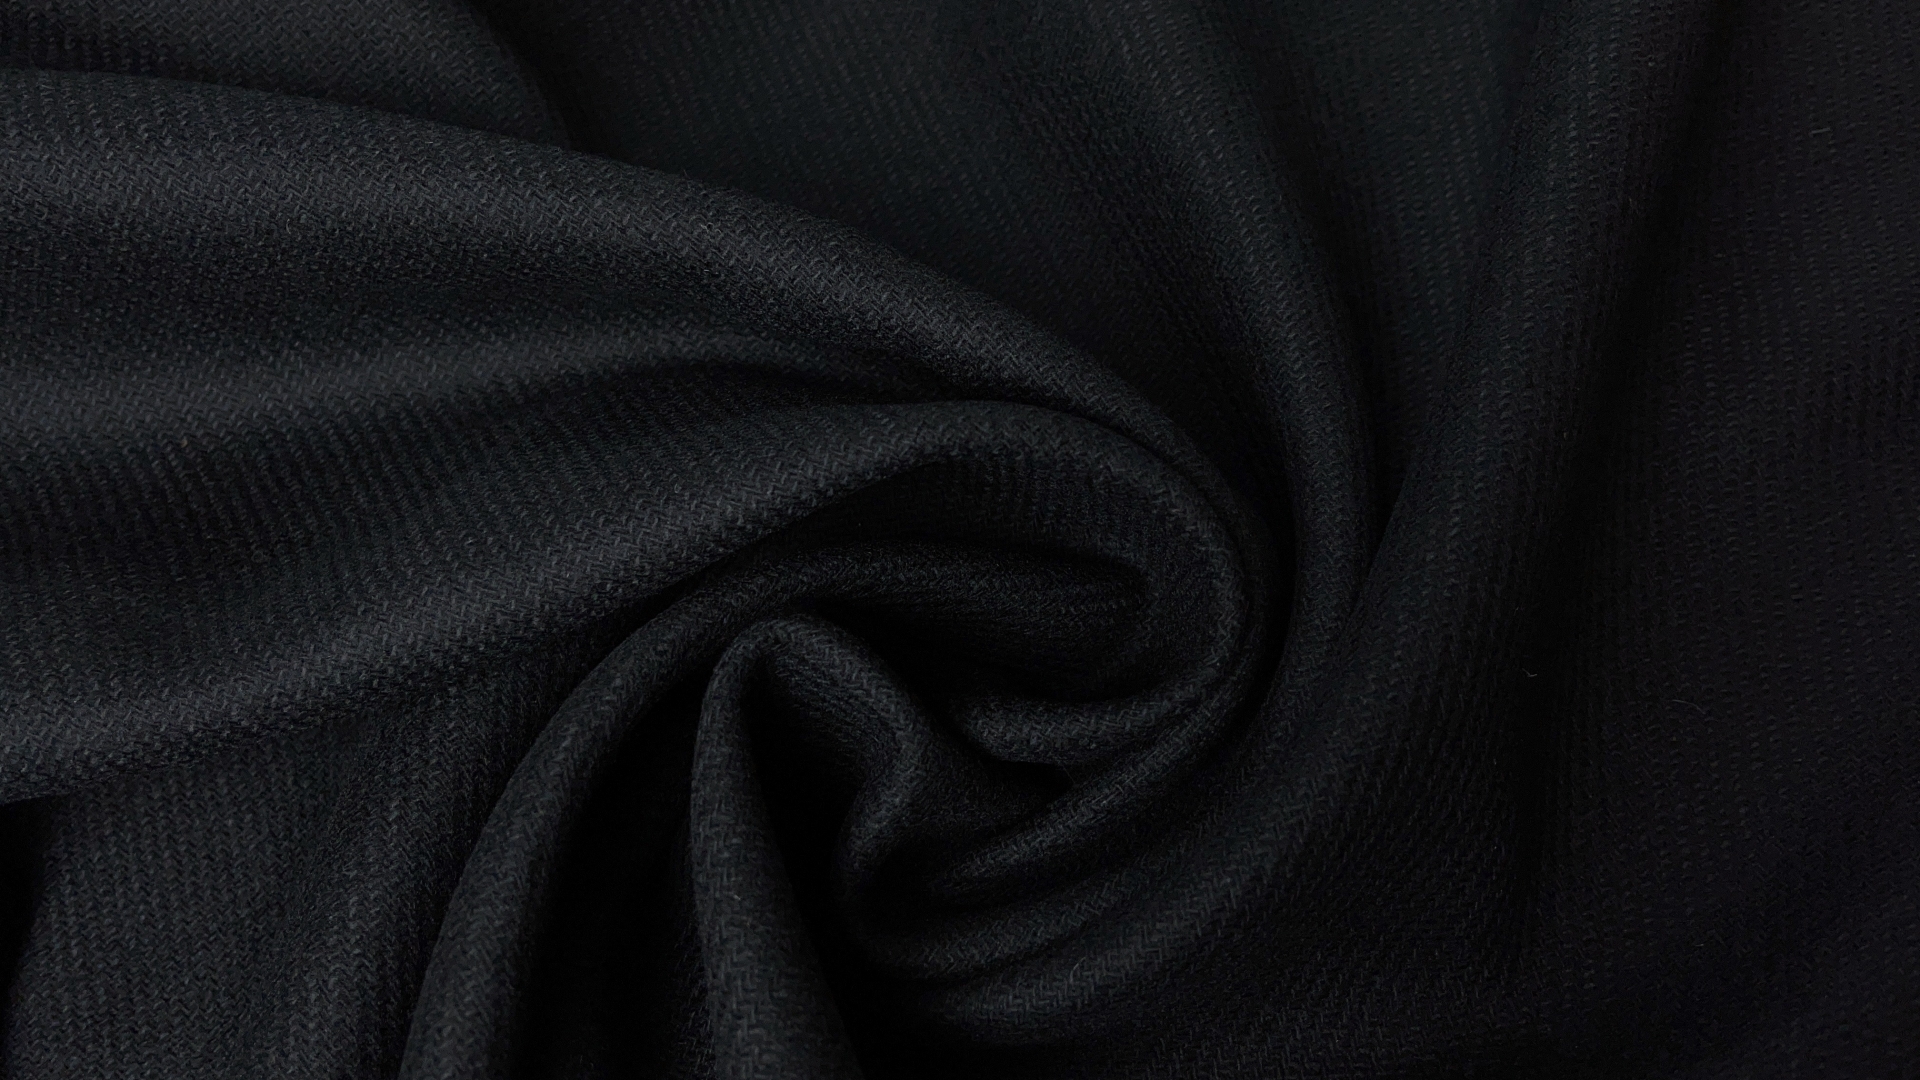 Пальтовая ткань черного оттенка, плотность 500 гр м.п.  Полотно с лоском, выработка в диагональ. Для демисезонного пальто или теплой зимней юбки.